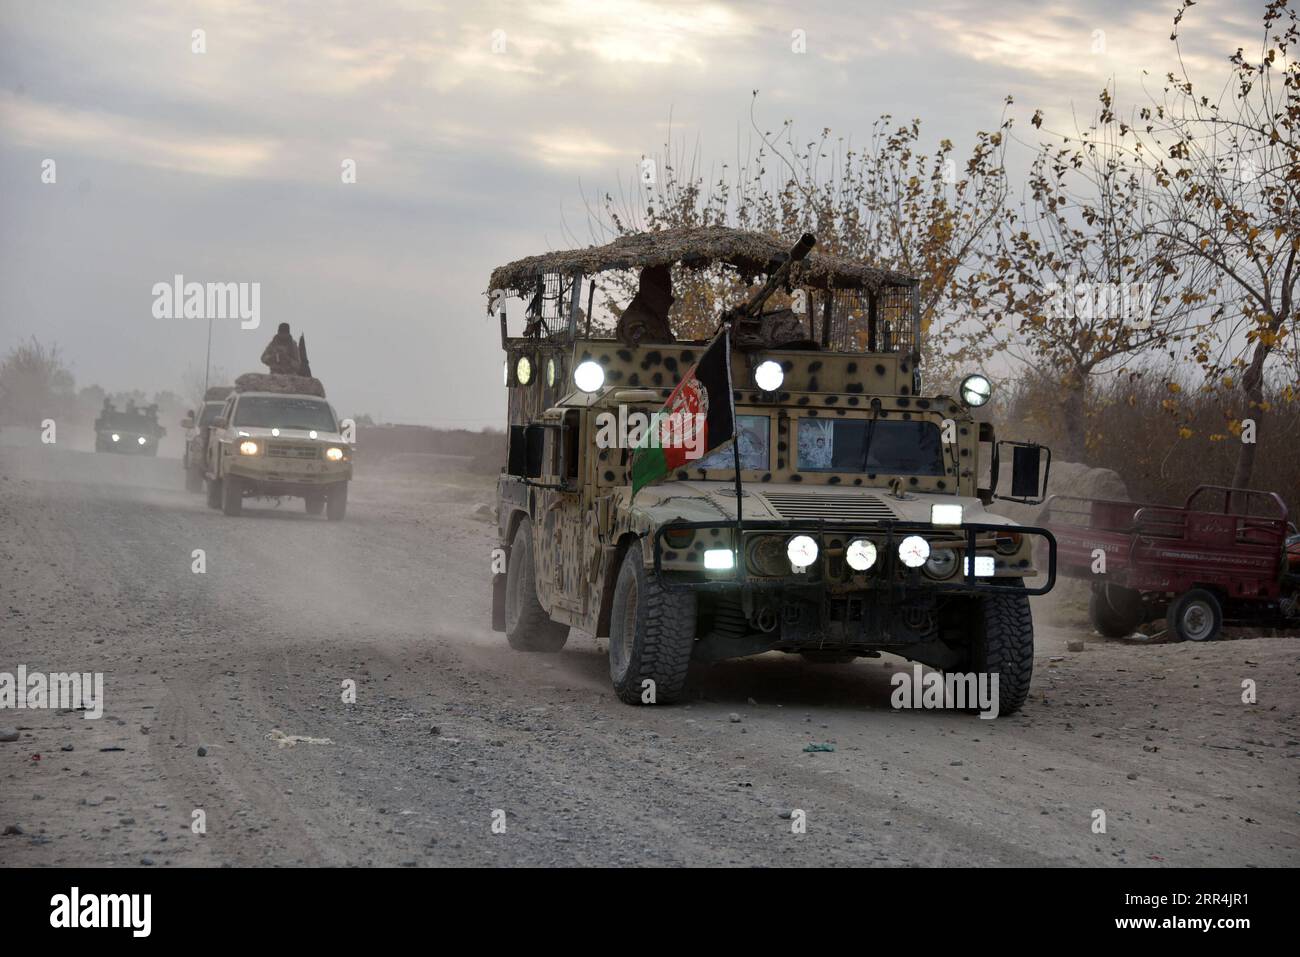 201207 -- PEKING, 7. Dezember 2020 -- Foto vom 5. Dezember 2020 zeigt Militärfahrzeuge während einer Militäroperation in der Provinz Kandahar, Afghanistan. Mindestens 18 Militante wurden in der südlichen Provinz Kandahar, der ehemaligen Festung der Taliban-Ausrüstung, getötet, sagte eine Erklärung des Verteidigungsministeriums, die hier am Sonntag veröffentlicht wurde. Foto von /Xinhua XINHUA FOTOS DES TAGES SanaullahxSeiam PUBLICATIONxNOTxINxCHN Stockfoto